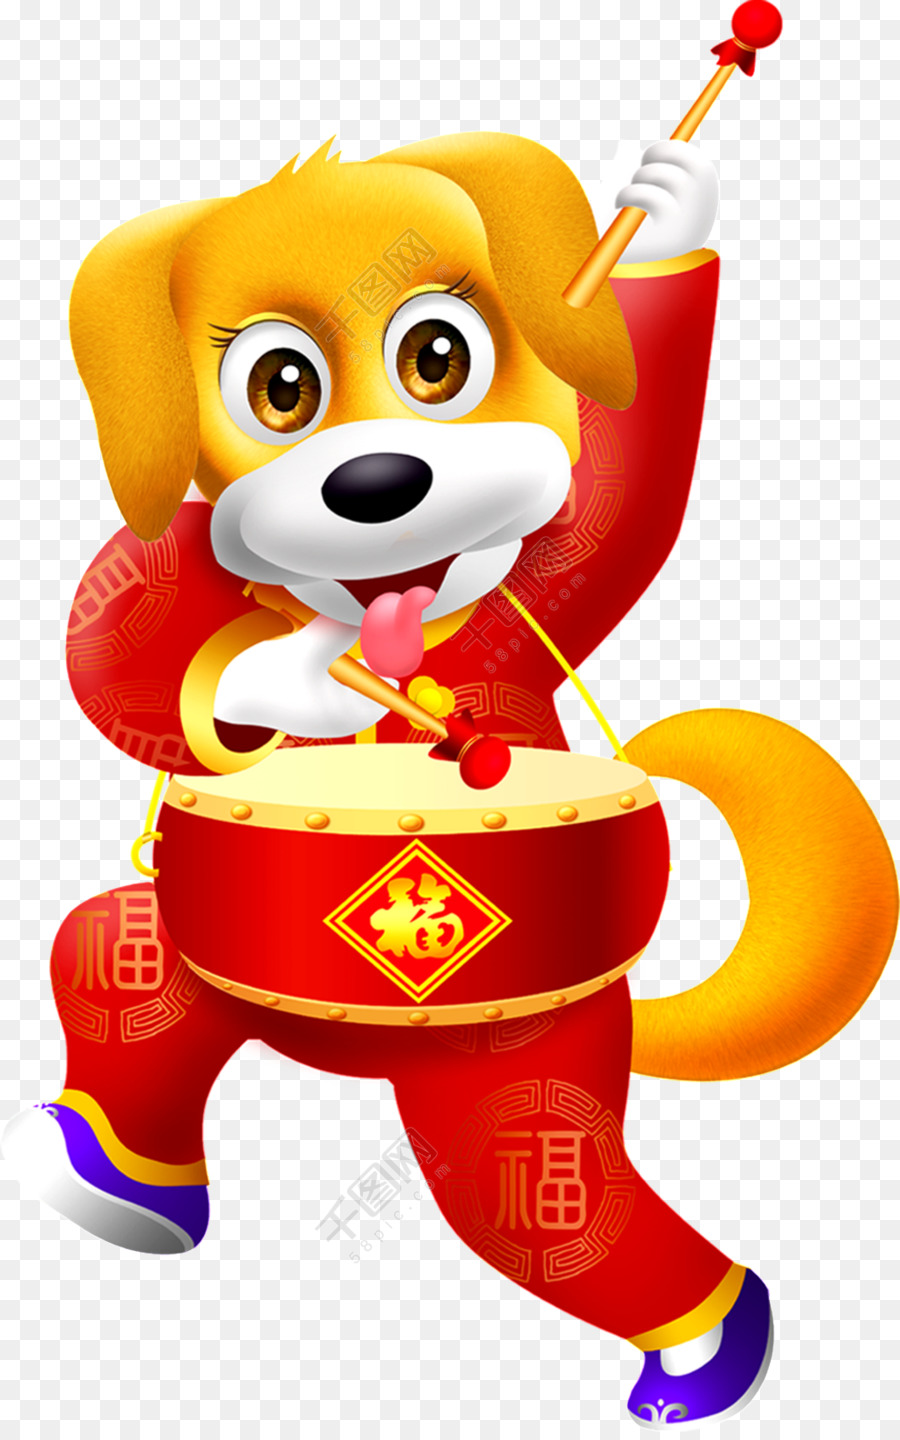 Welpen Chinese New Year Hund Lunar New Year Bild - baquetas design-element